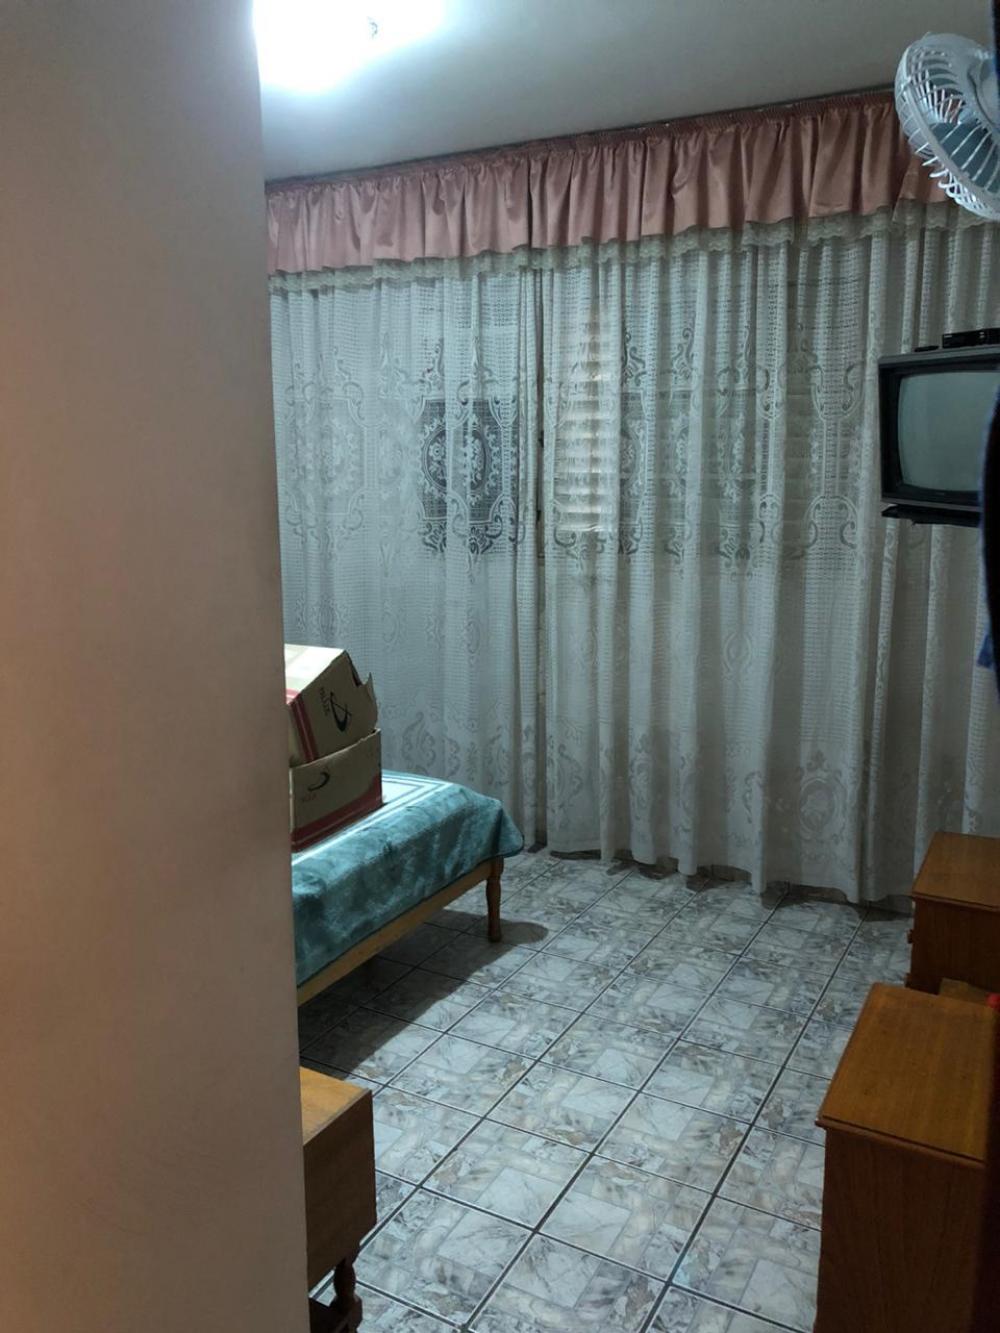 Alugar Apartamento / Padrão em São José do Rio Preto apenas R$ 1.500,00 - Foto 18